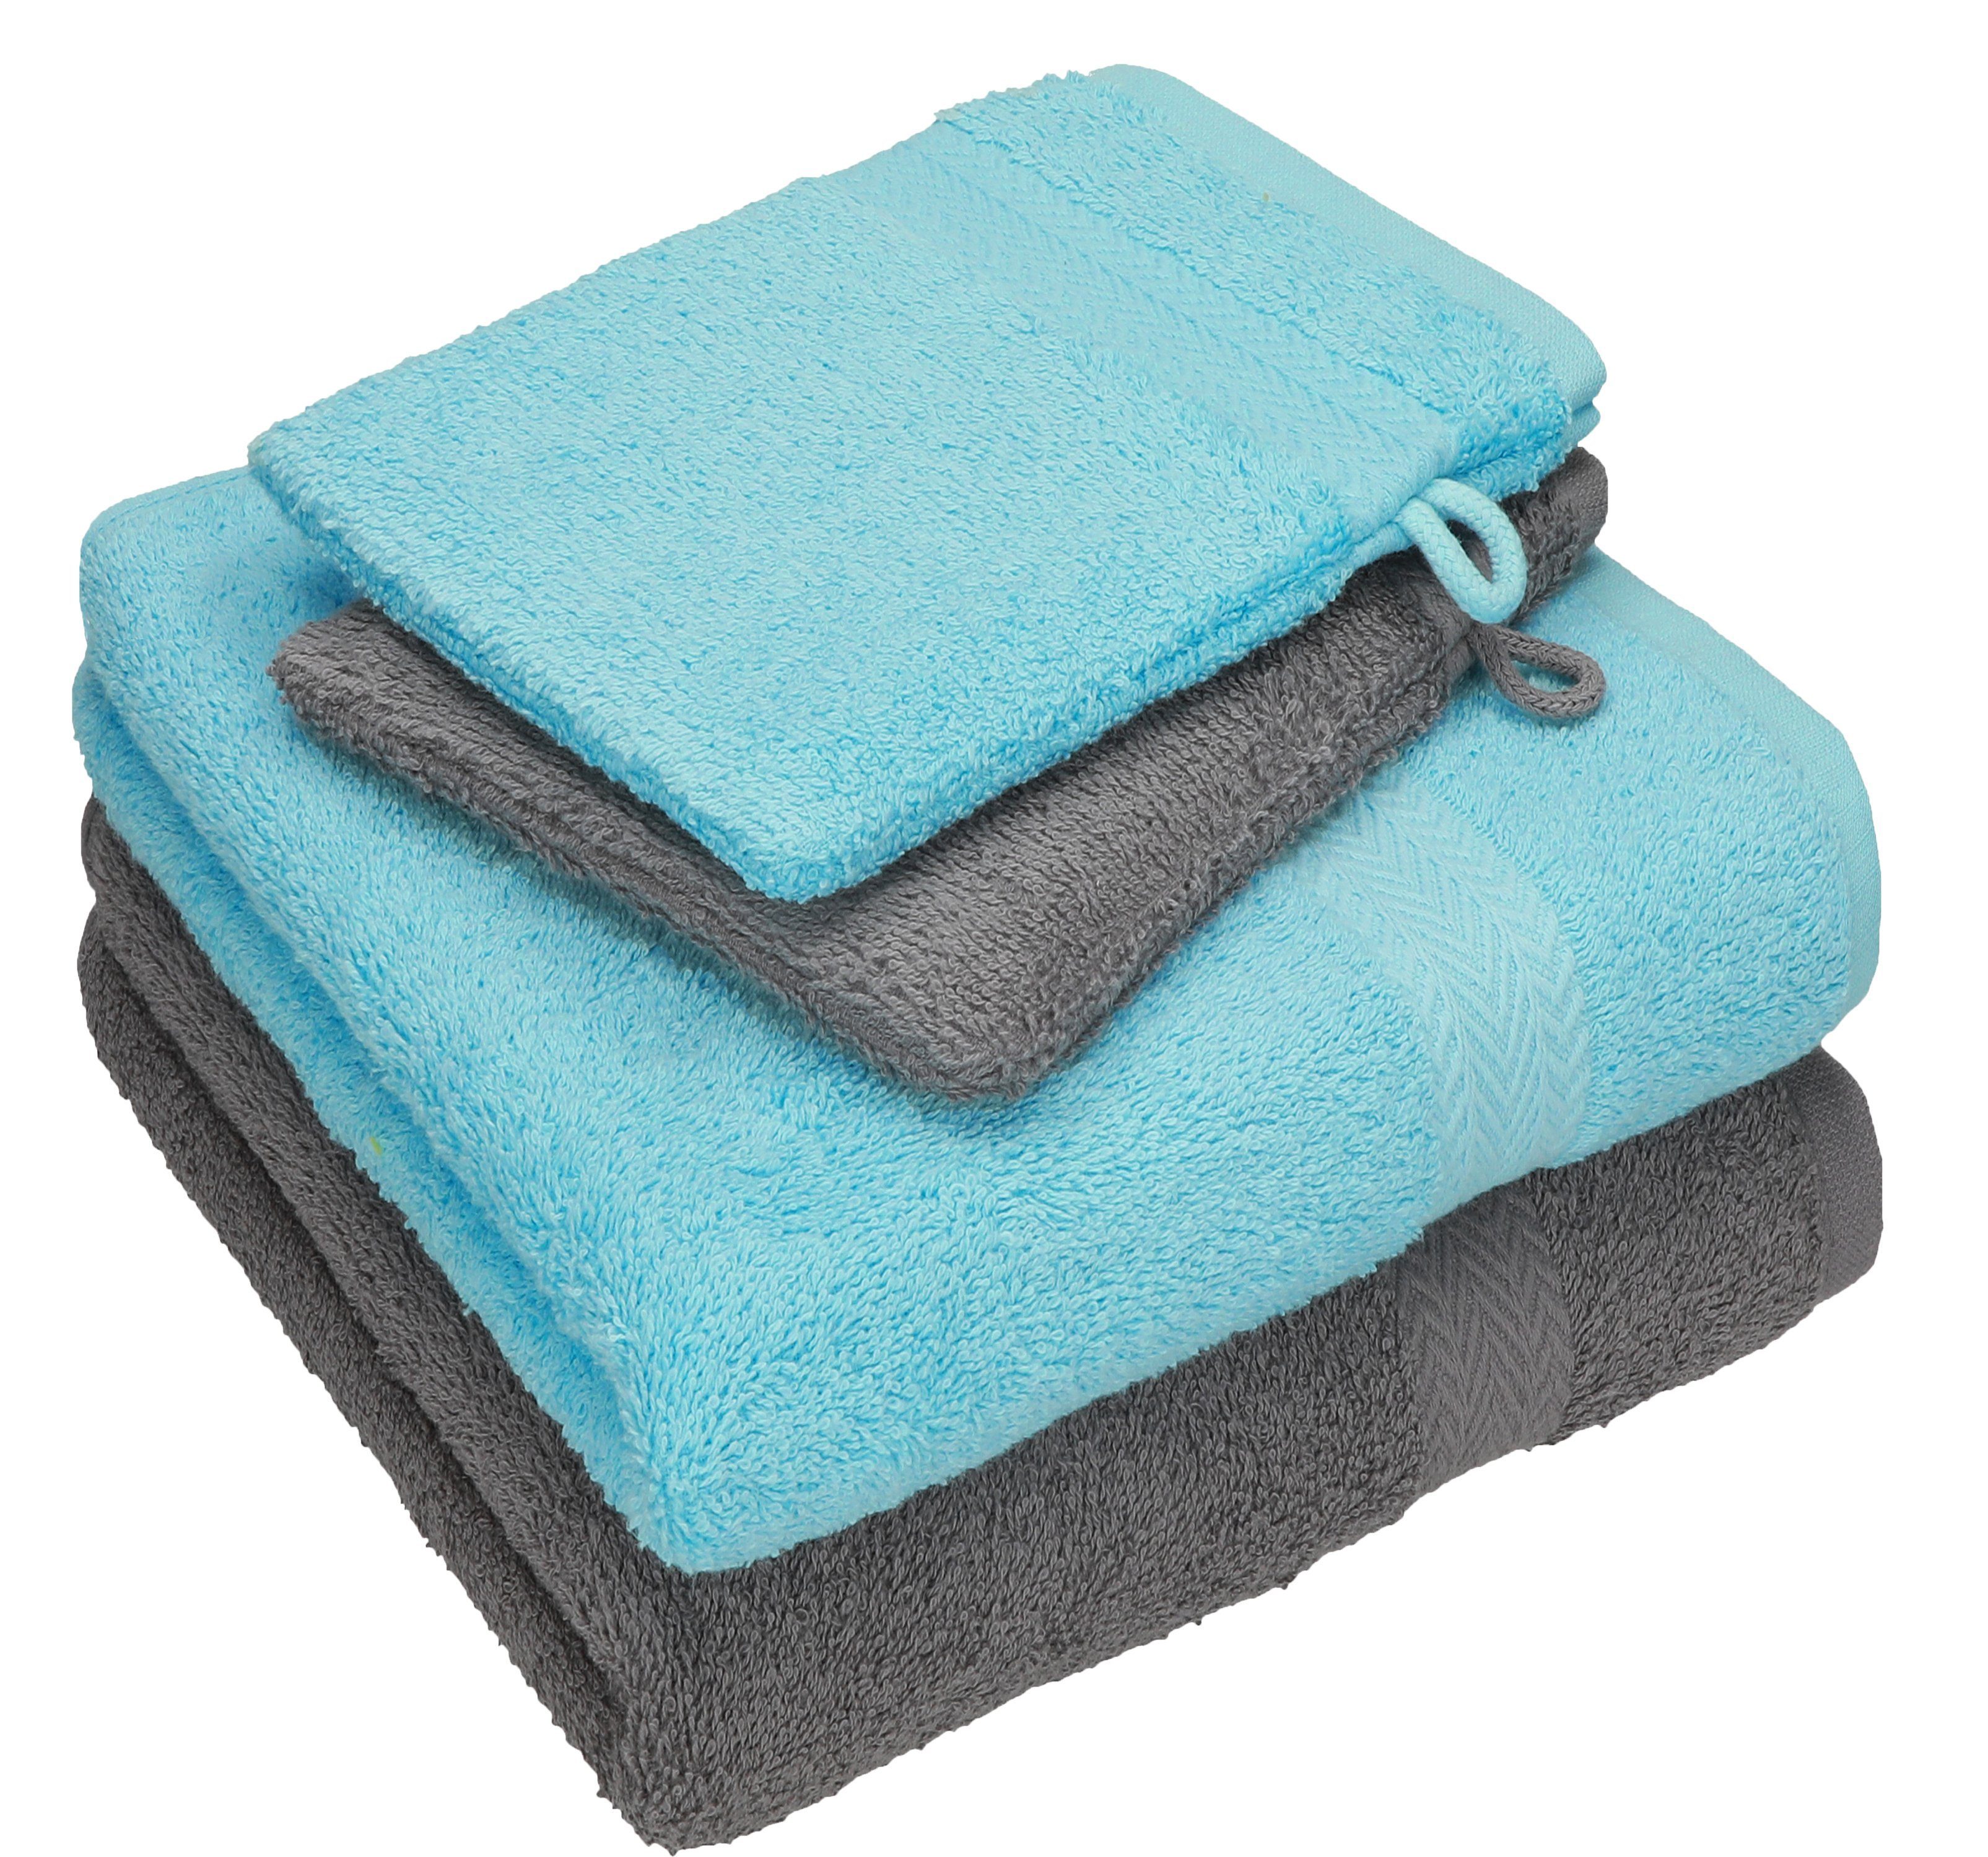 Betz Handtuch Set 4 TLG. Handtuch Set Happy Pack 100% Baumwolle 2 Handtücher 2 Waschhandschuhe, 100% Baumwolle anthrazit grau - türkis